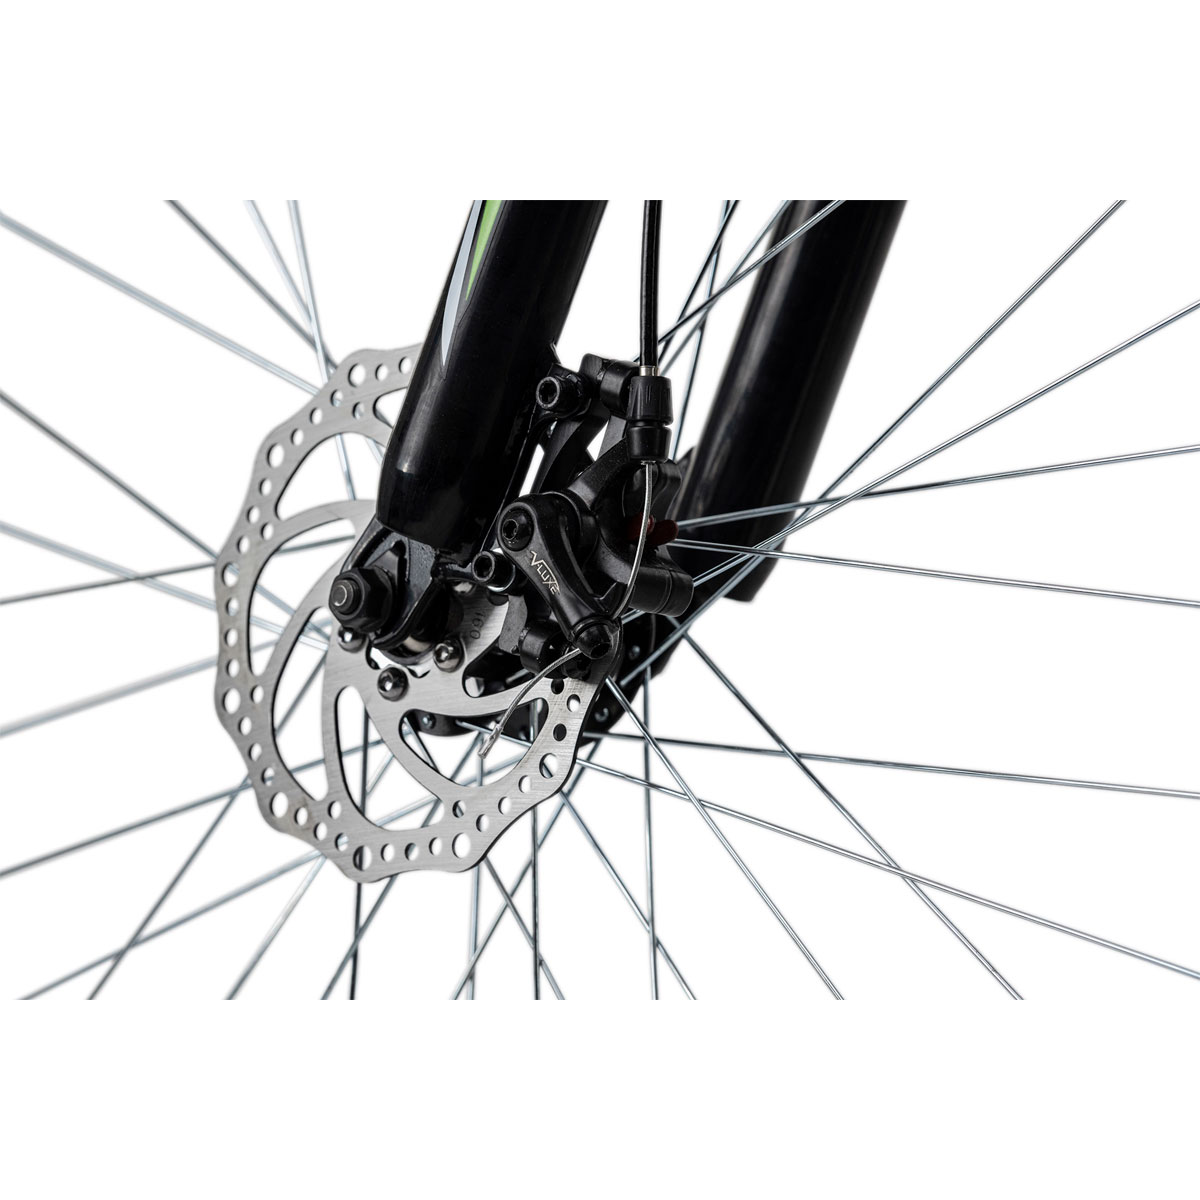 Mountainbike „Xceed“, Hardtail, 26 Zoll, 50 cm, 21 Gänge, schwarz-grün